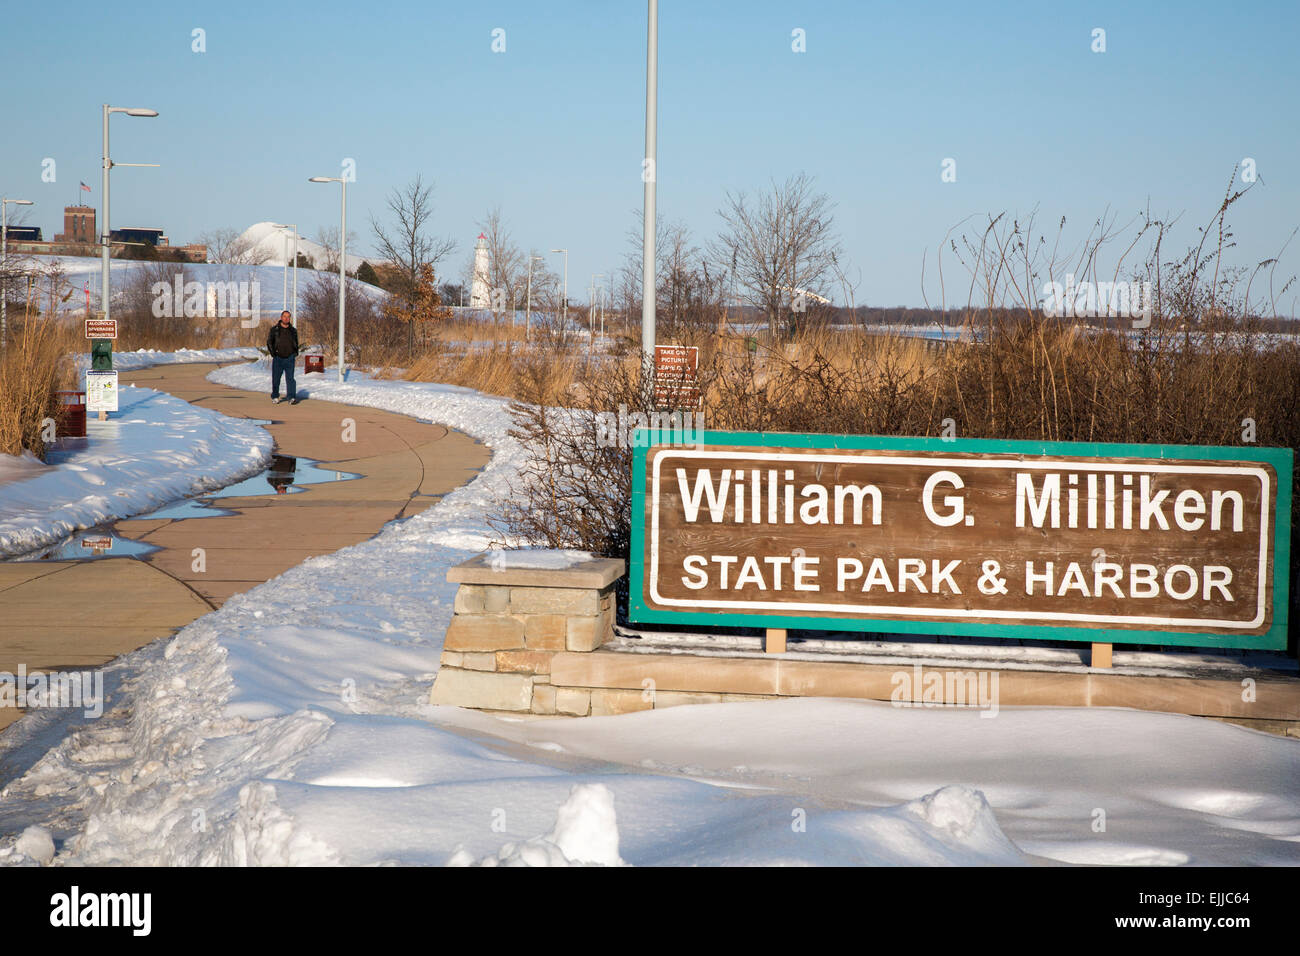 Detroit, Michigan - William G. Milliken parco dello stato d'inverno. Il parco si trova nel centro della città, lungo il Fiume Detroit. Foto Stock